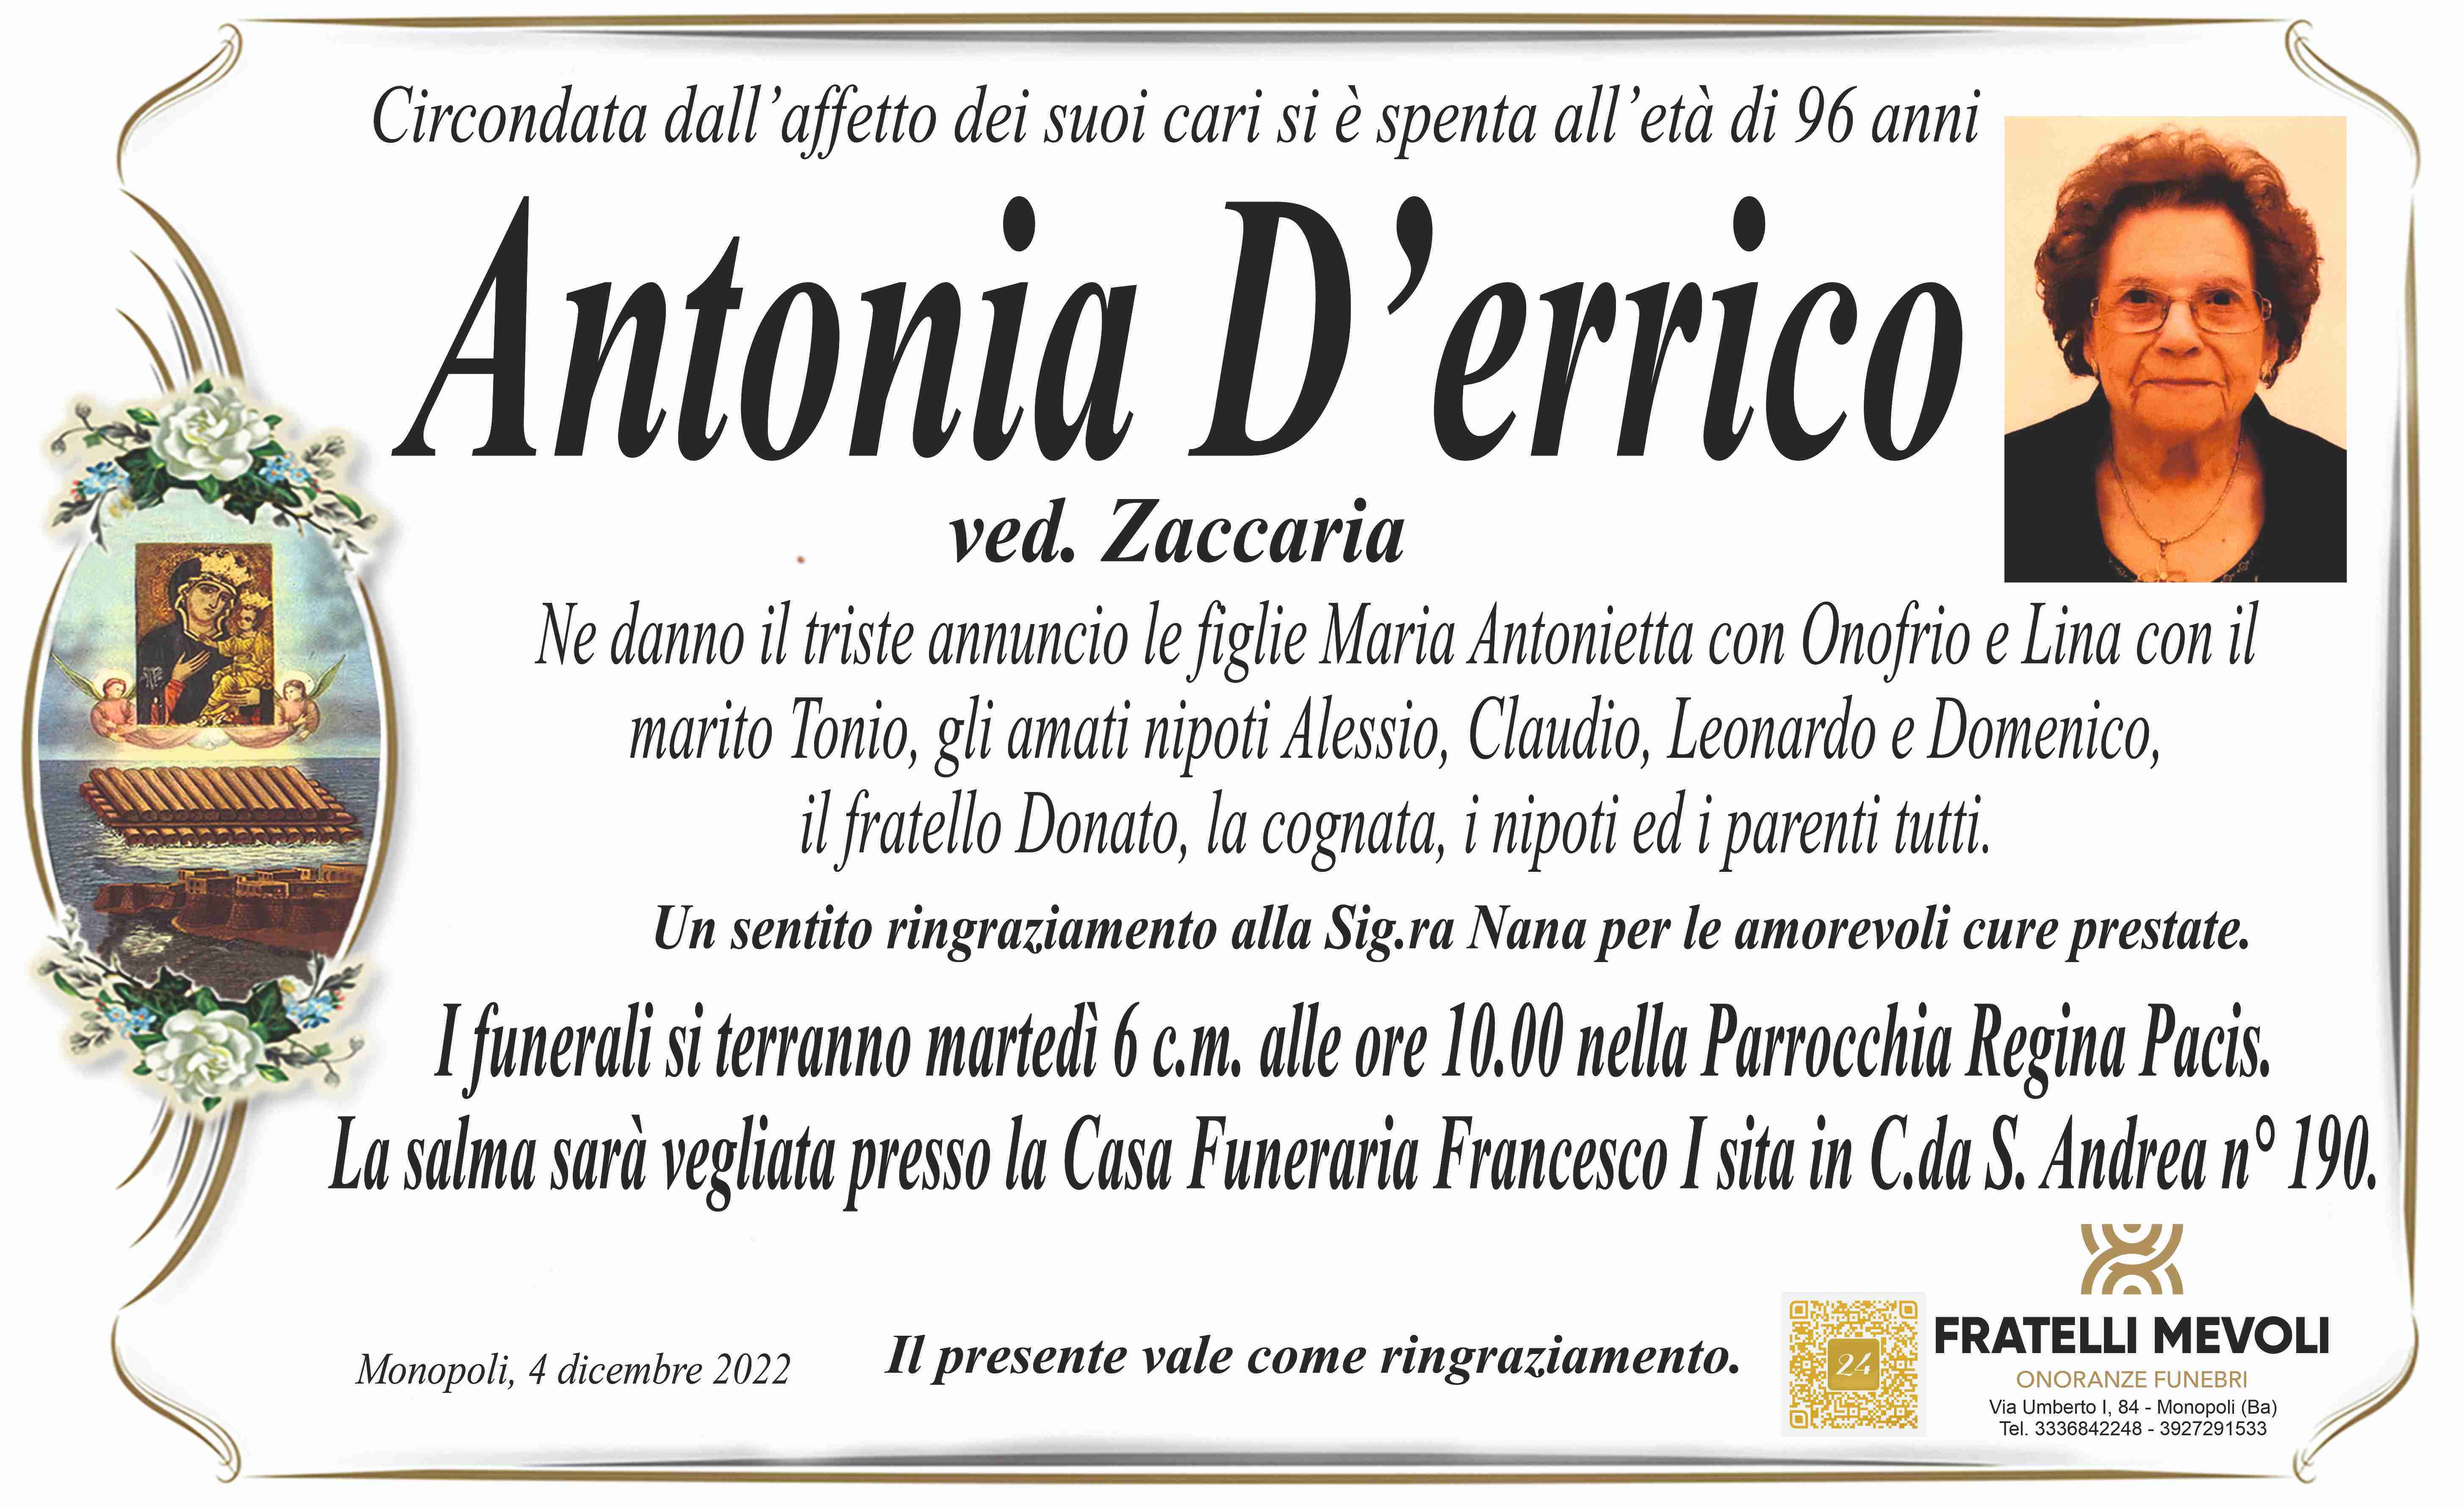 Antonia D'errico